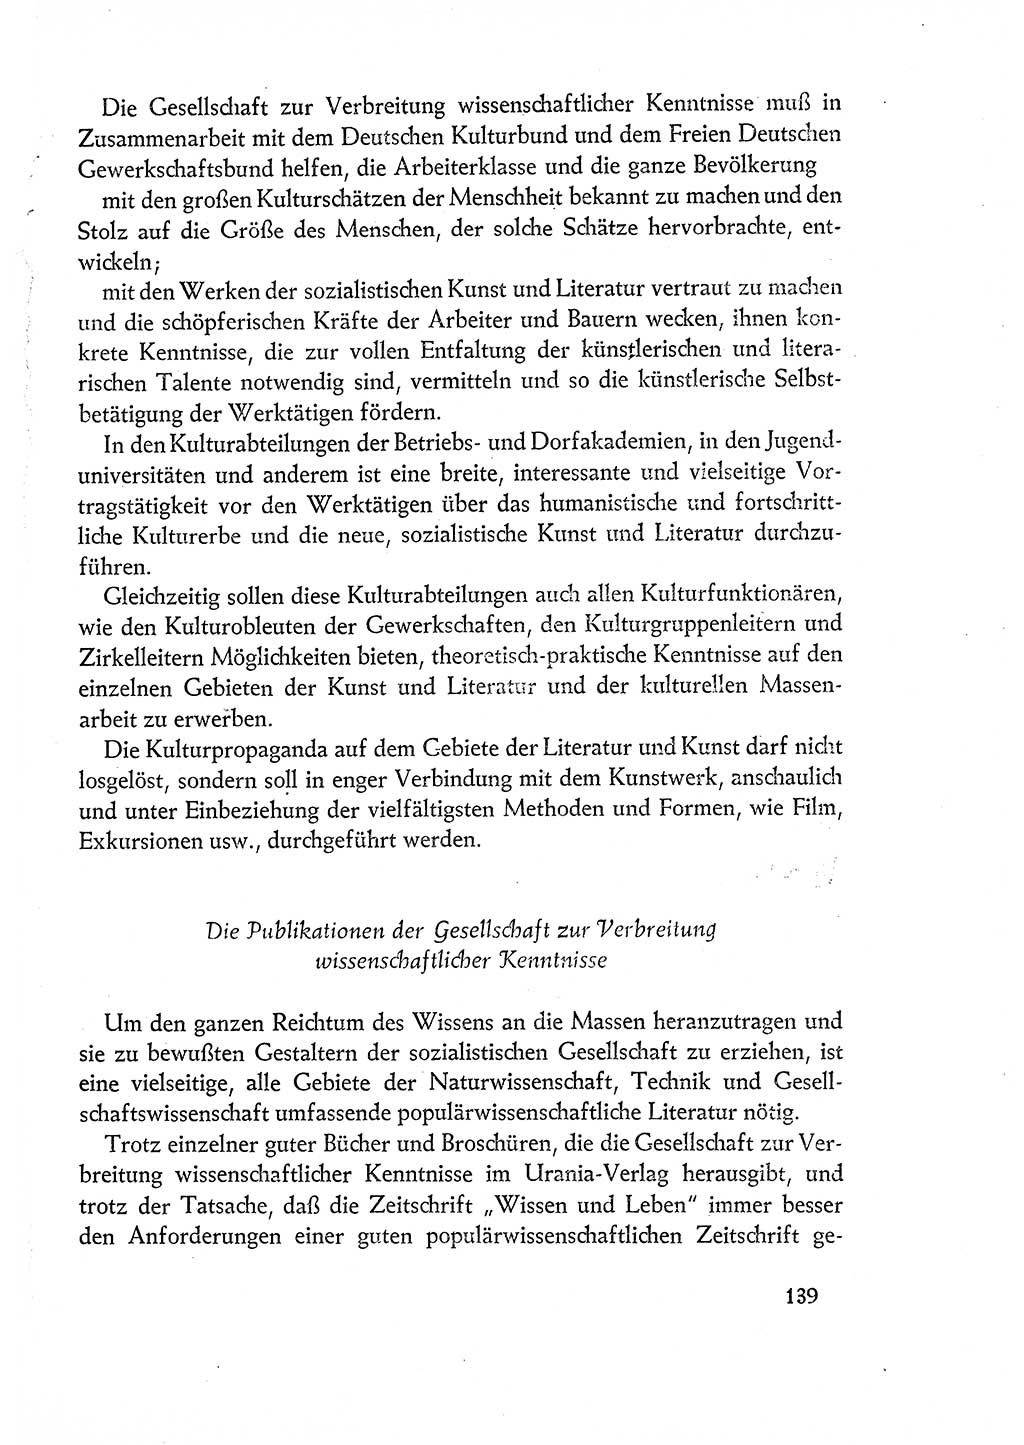 Dokumente der Sozialistischen Einheitspartei Deutschlands (SED) [Deutsche Demokratische Republik (DDR)] 1960-1961, Seite 139 (Dok. SED DDR 1960-1961, S. 139)